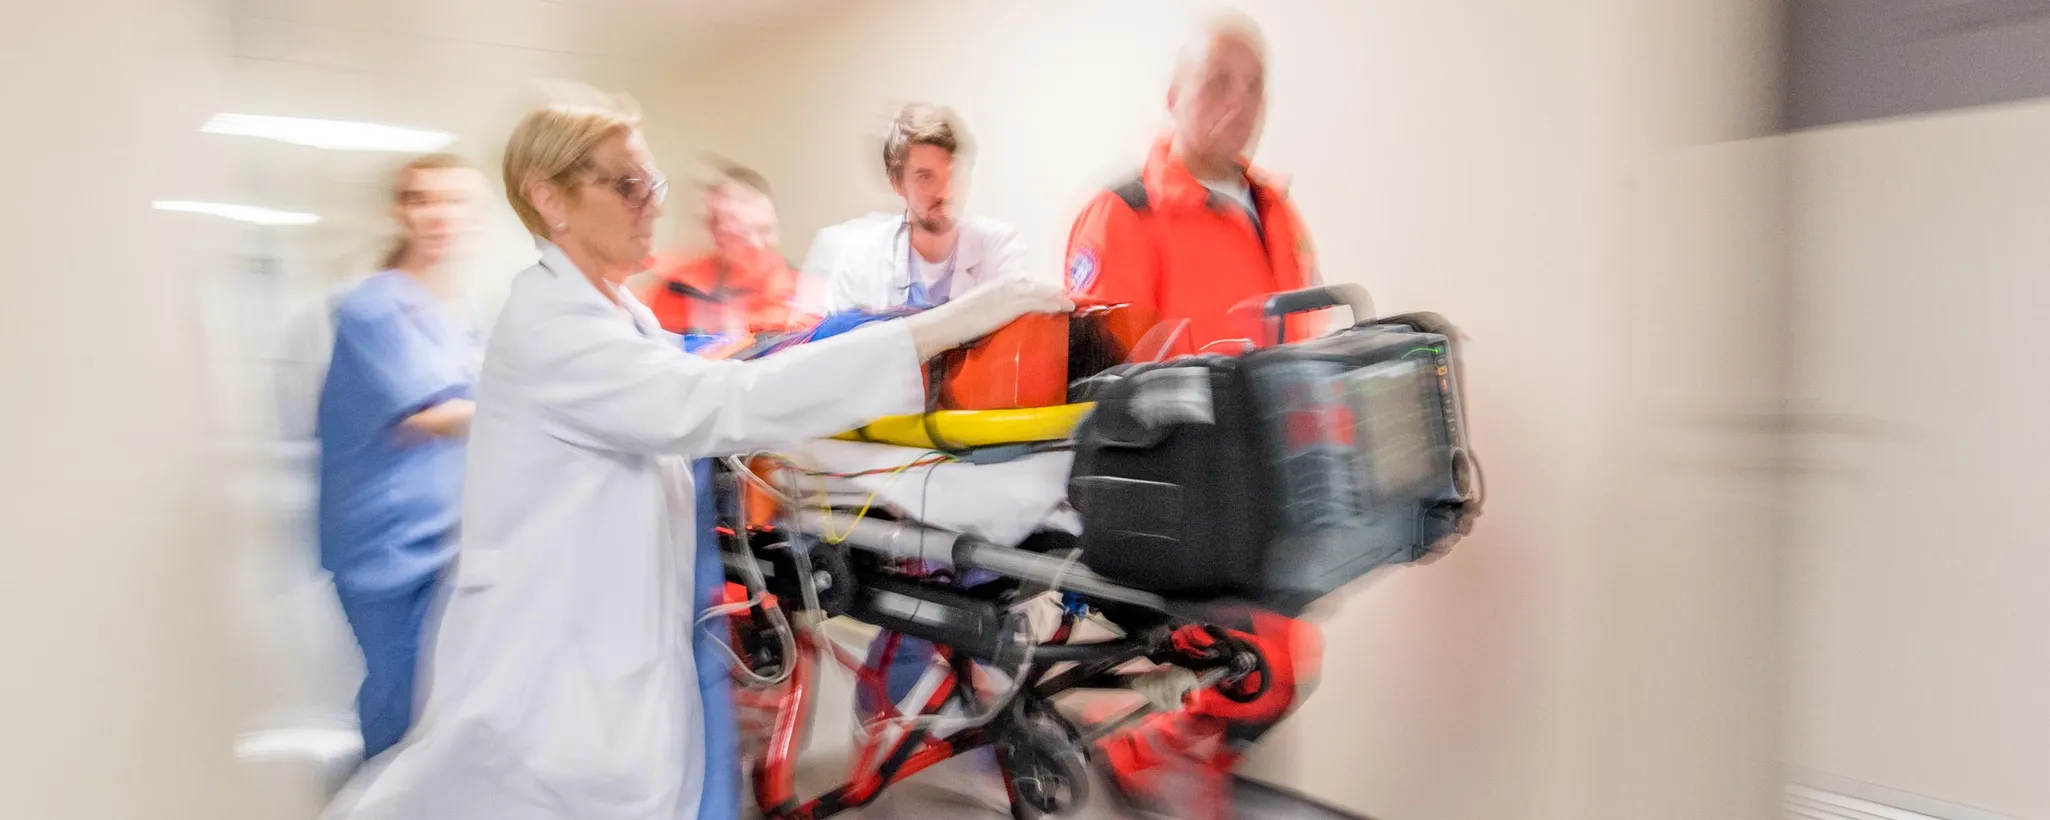 Notärzte bei der Arbeit schieben eine Trage mit einem Patienten durch einen Krankenhausflur